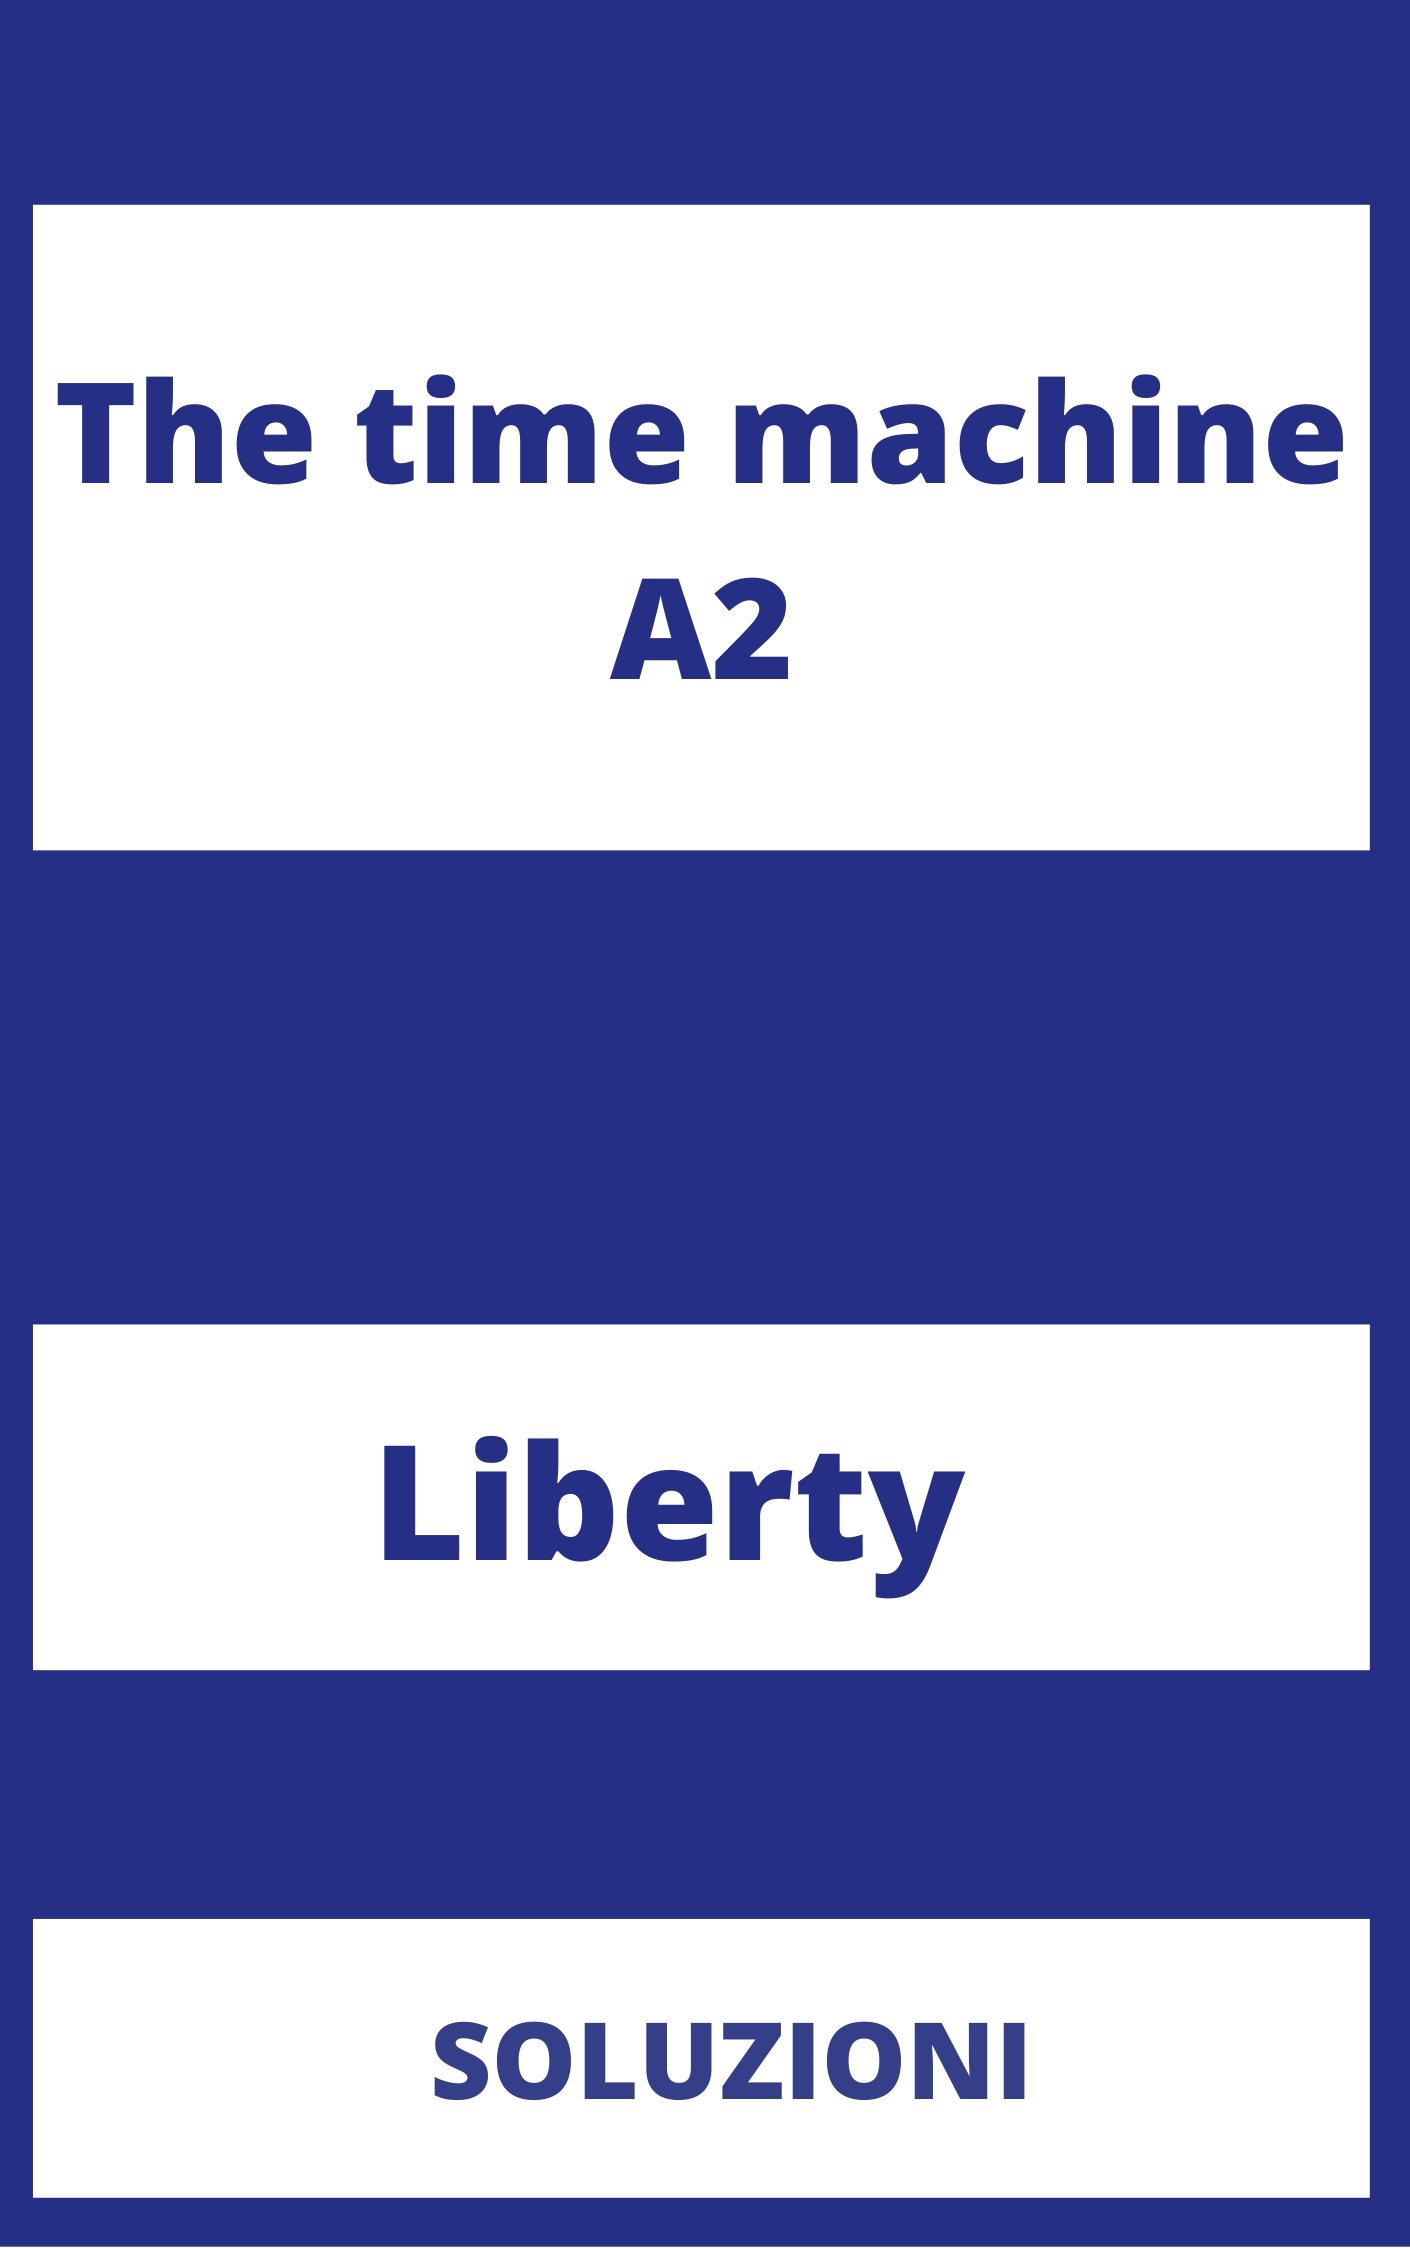 The time machine A2 Soluzioni